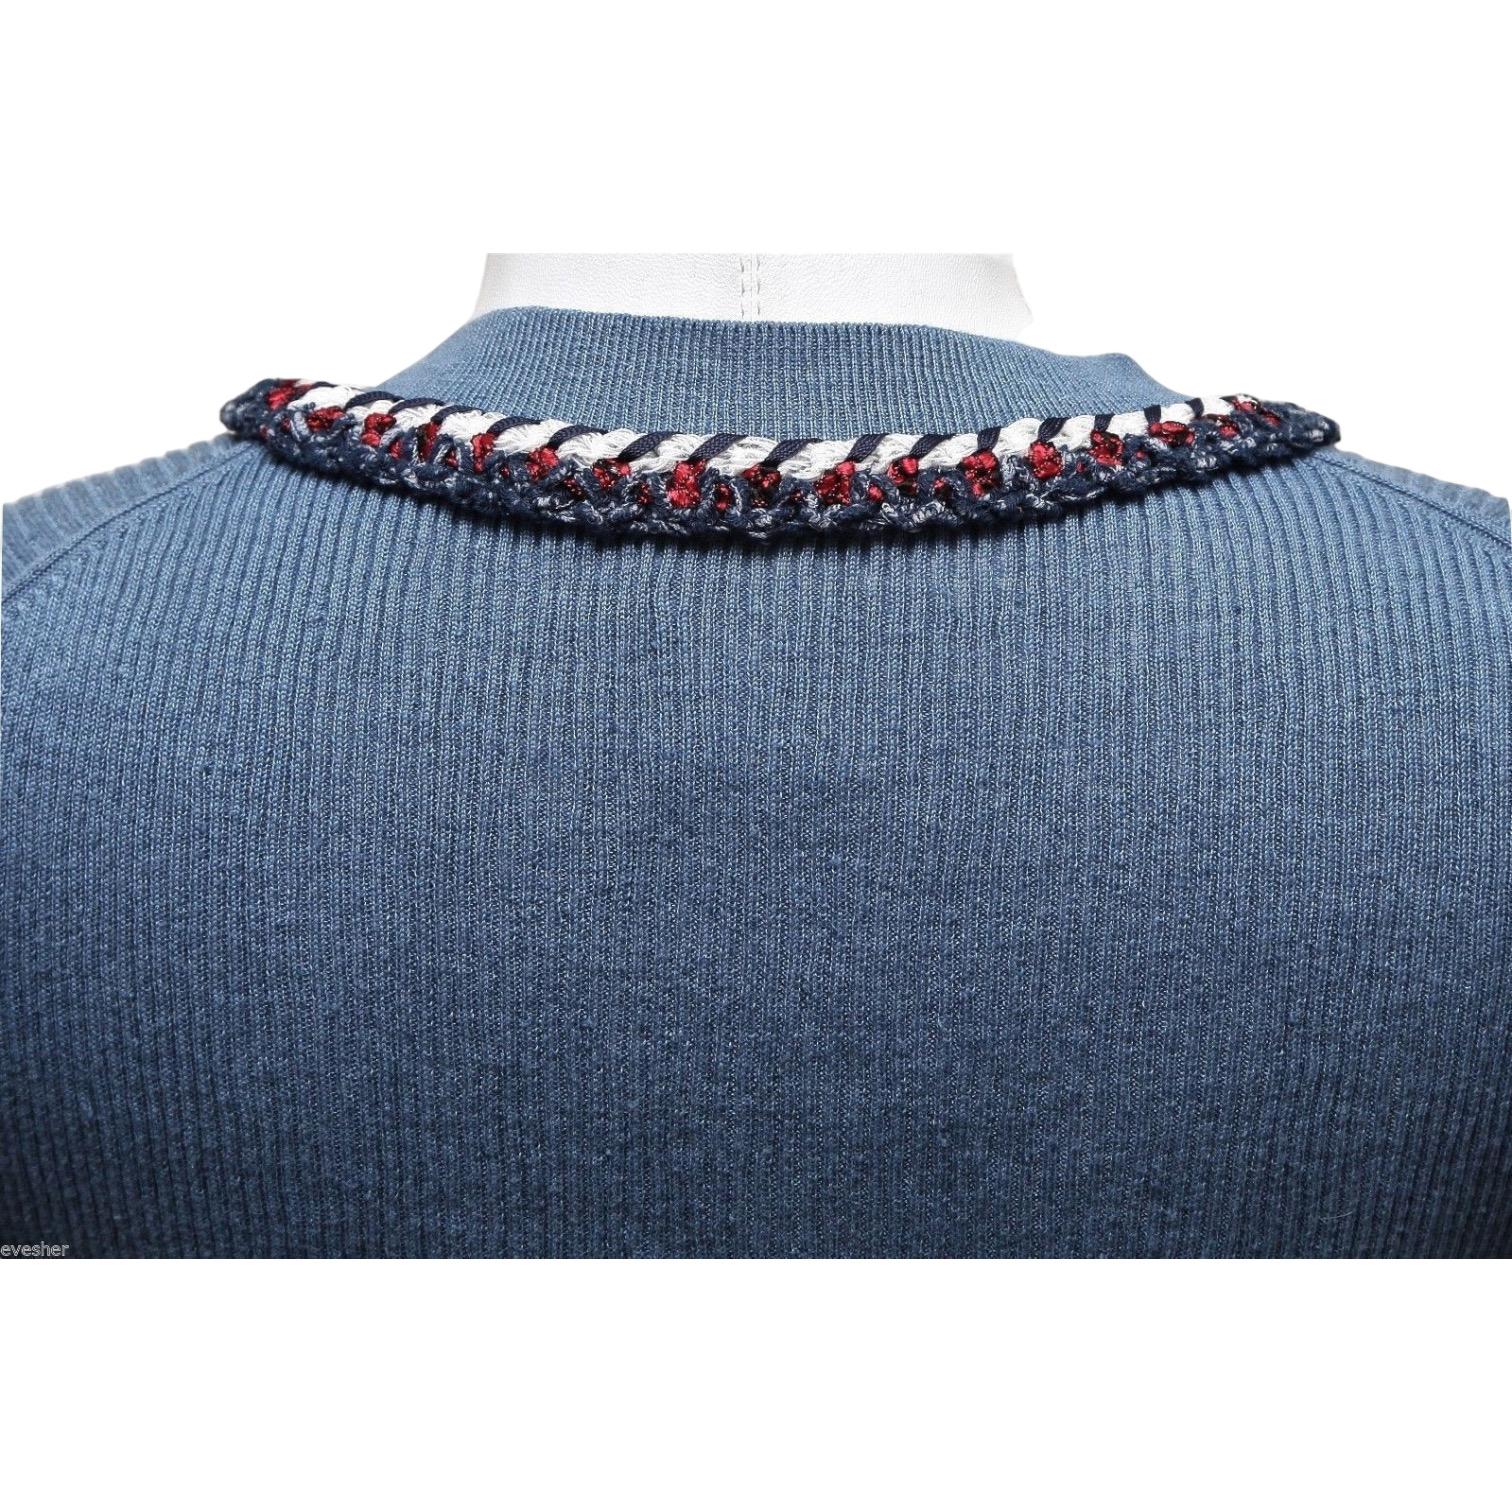 CHANEL Pullover-Oberteil mit langen Ärmeln in Marineblau, Rot, Weiß, Silber HW 40 13C 2013 Damen im Angebot